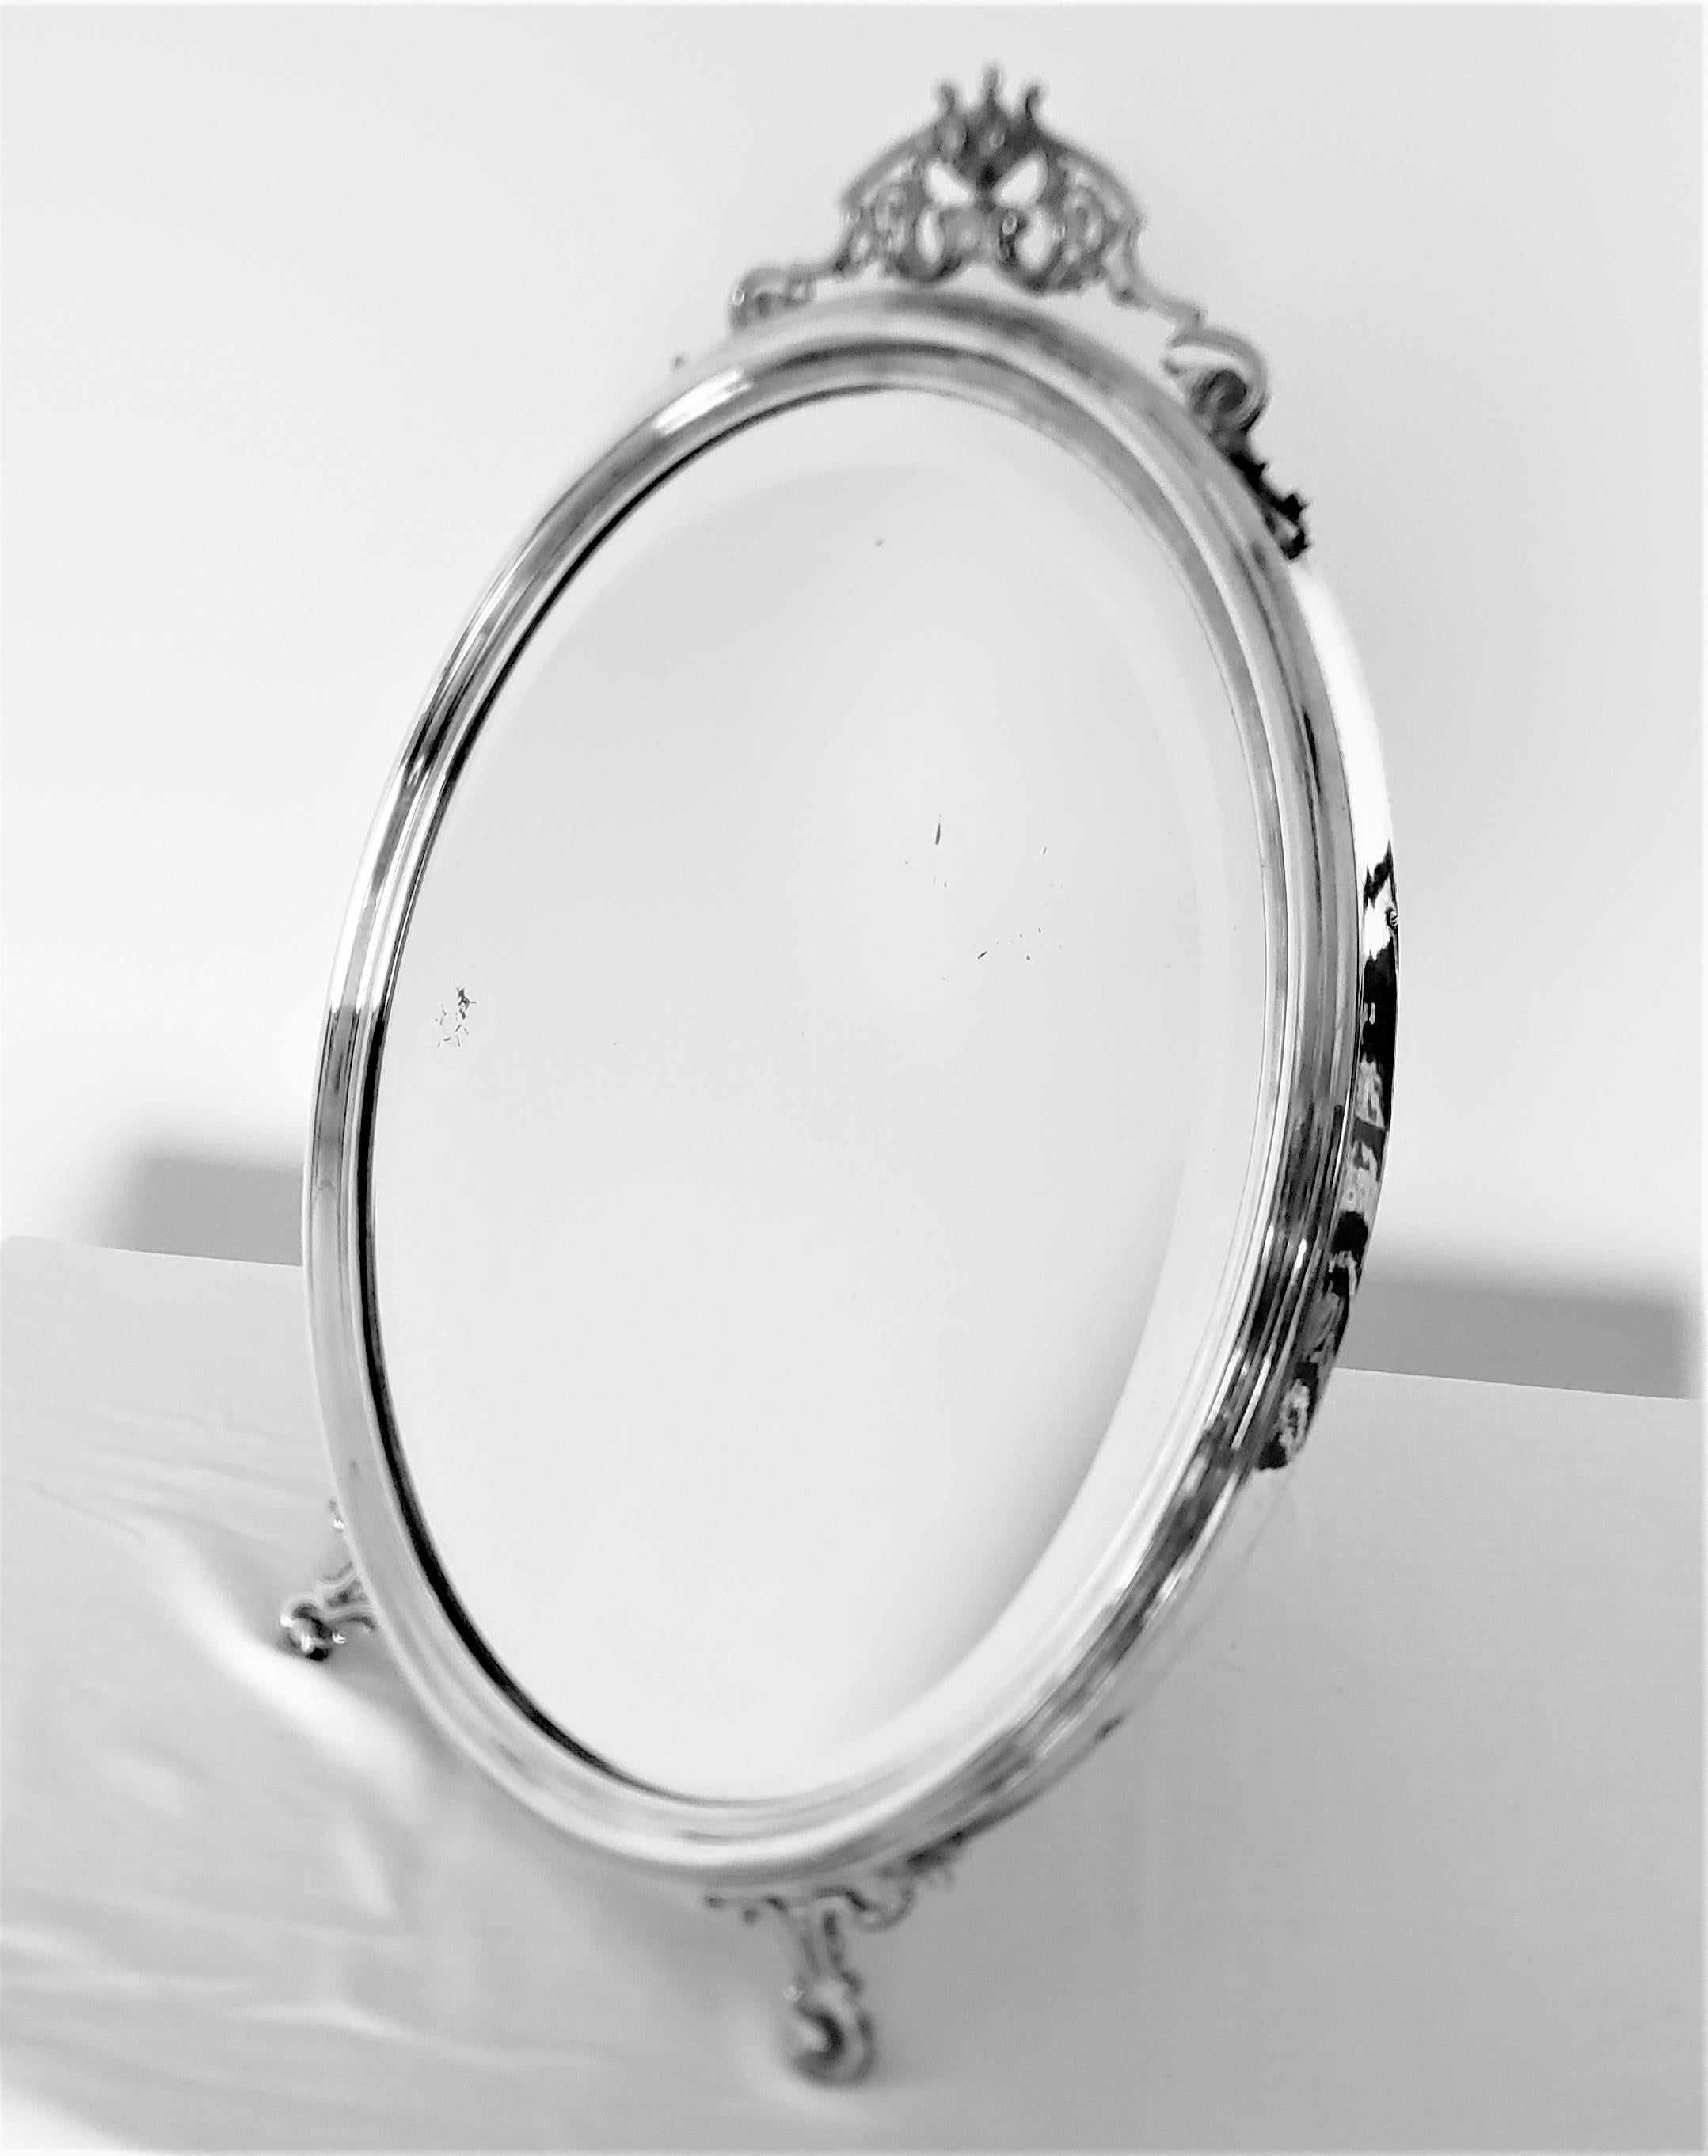 Dieser antike versilberte ovale Spiegel wurde von der renommierten Art Krupp Berndorf in England hergestellt und stammt aus der Zeit um 1900 und ist im edwardianischen Stil gehalten. Dieser Eitelkeits- oder Tischspiegel ist sehr gut konstruiert und